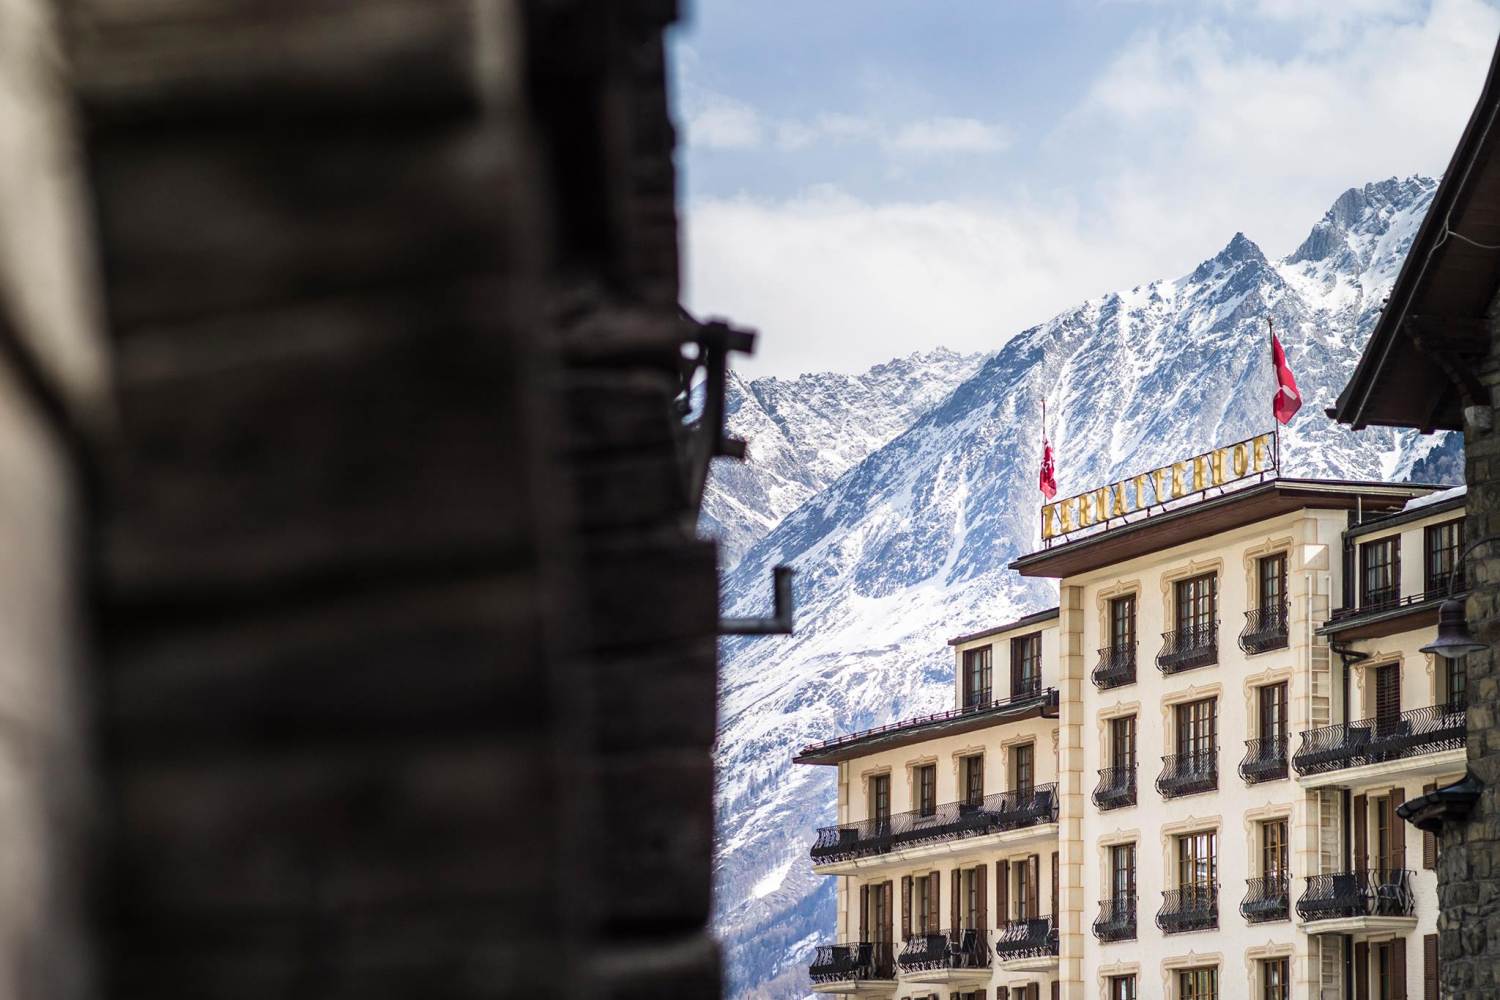 Grand Hotel Zermatterhof, Vails - Switzerland